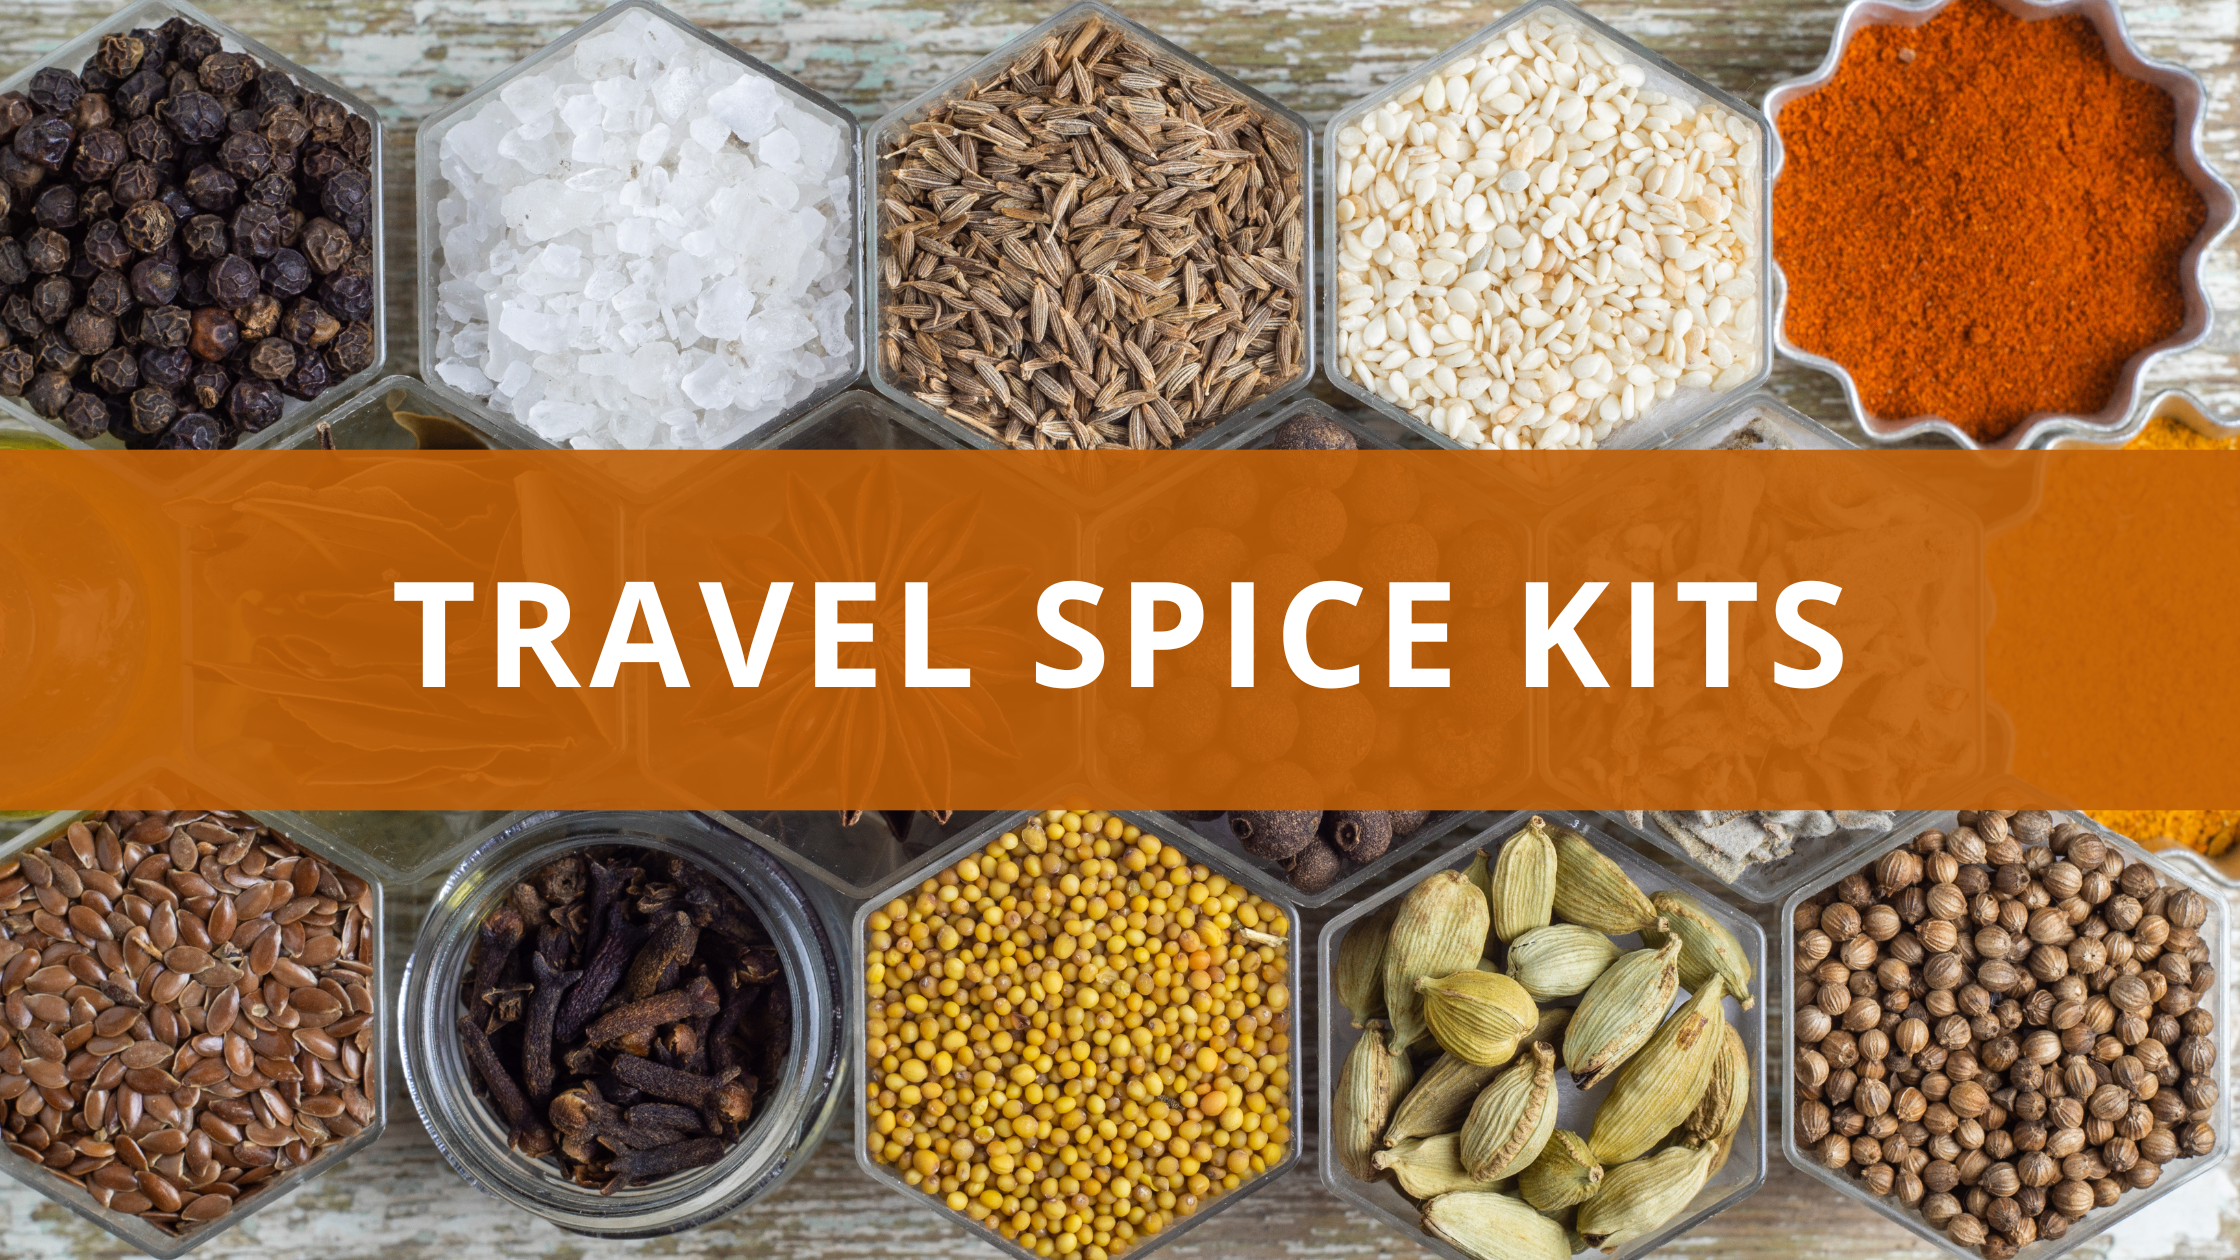 Travel Spice Kits